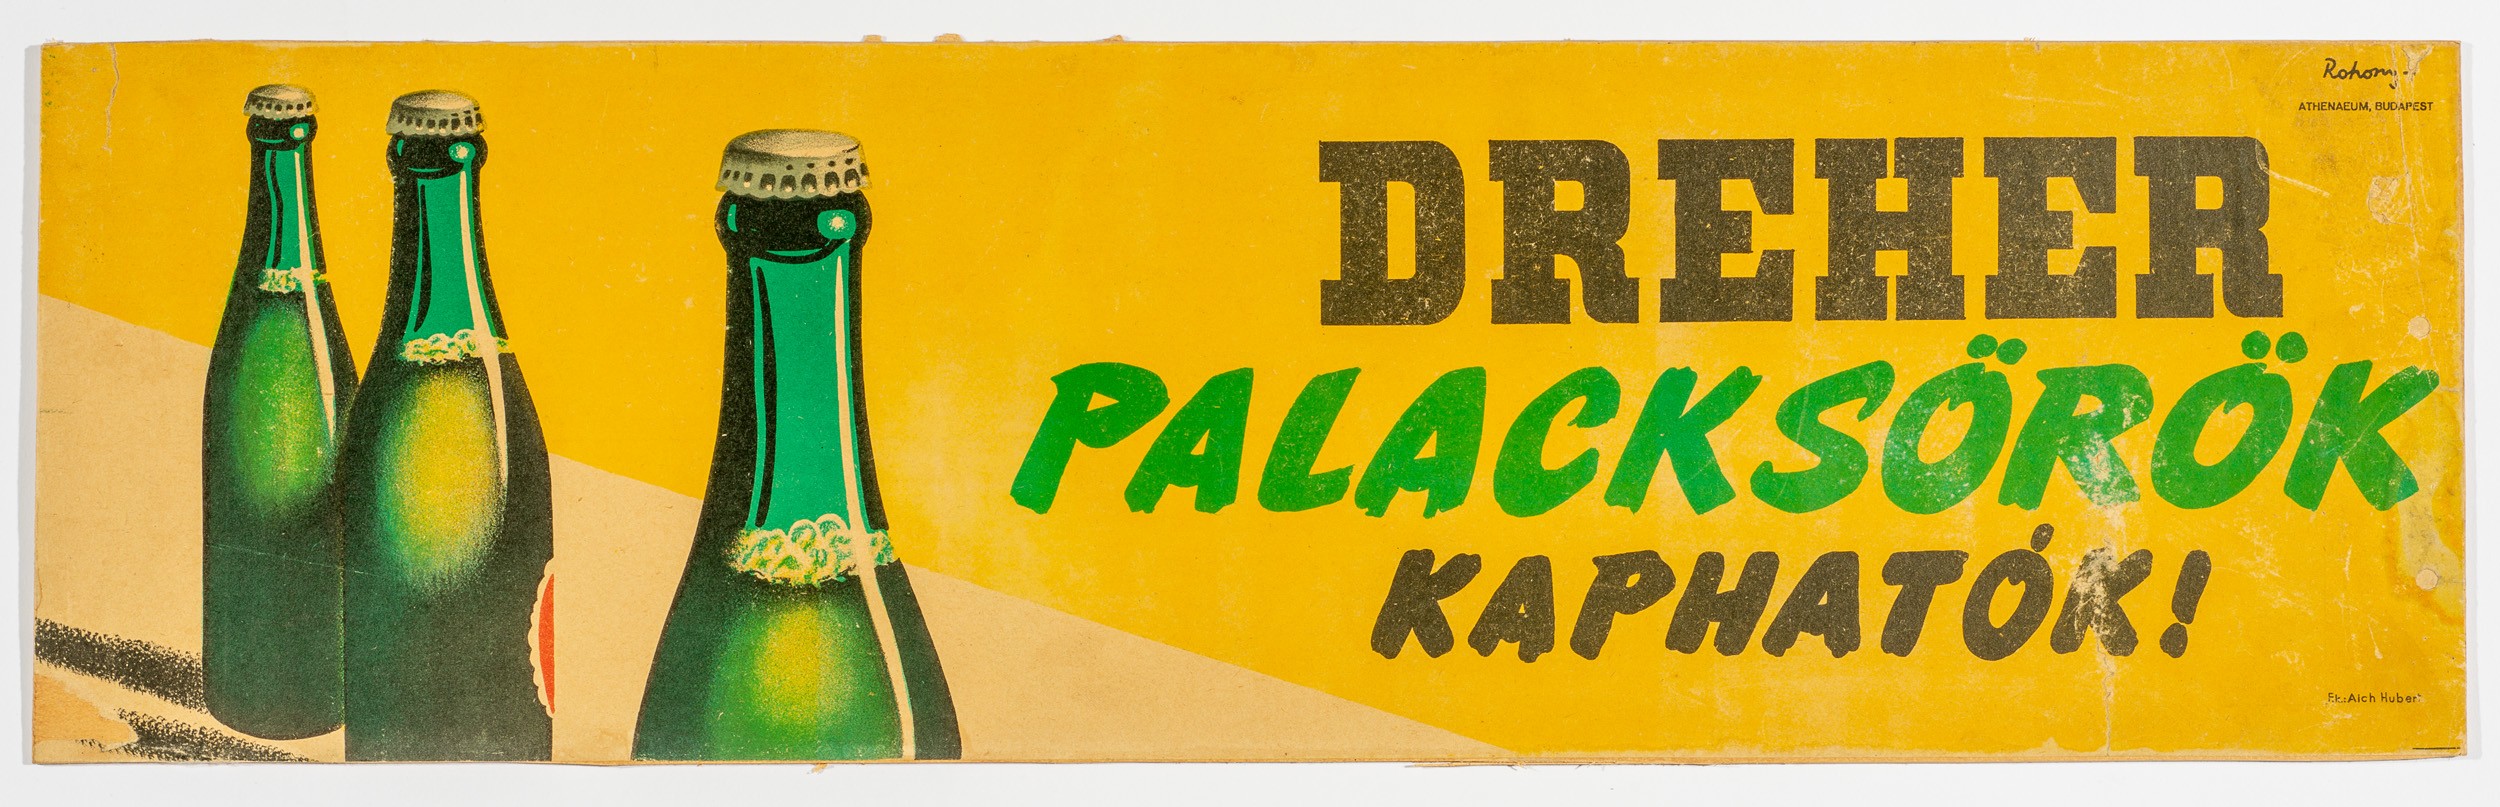 Dreher p.sörök kaphatók,szalag plakát (Söripari Emléktár - Dreher Sörmúzeum CC BY-NC-SA)